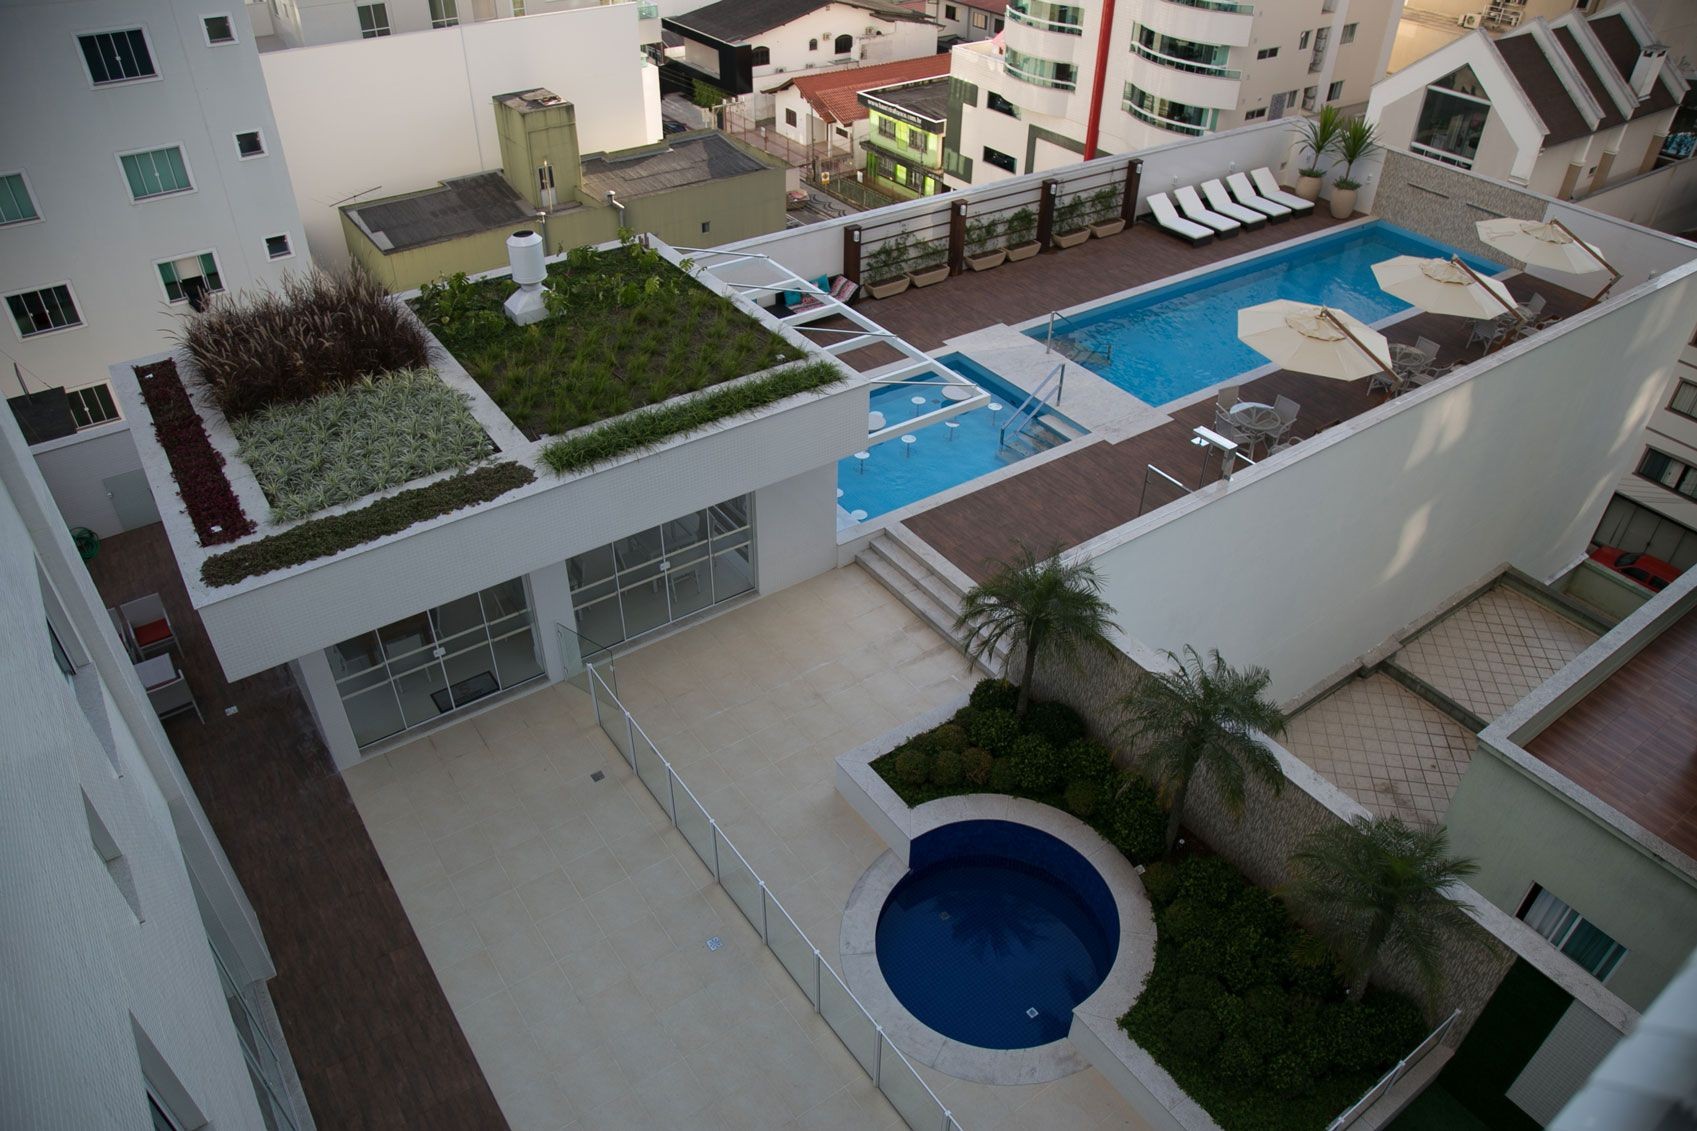 Apartamento Finamente Mobiliado, Equipado e Decorado  Localizado no Centro de Balneário Camboriú-SC